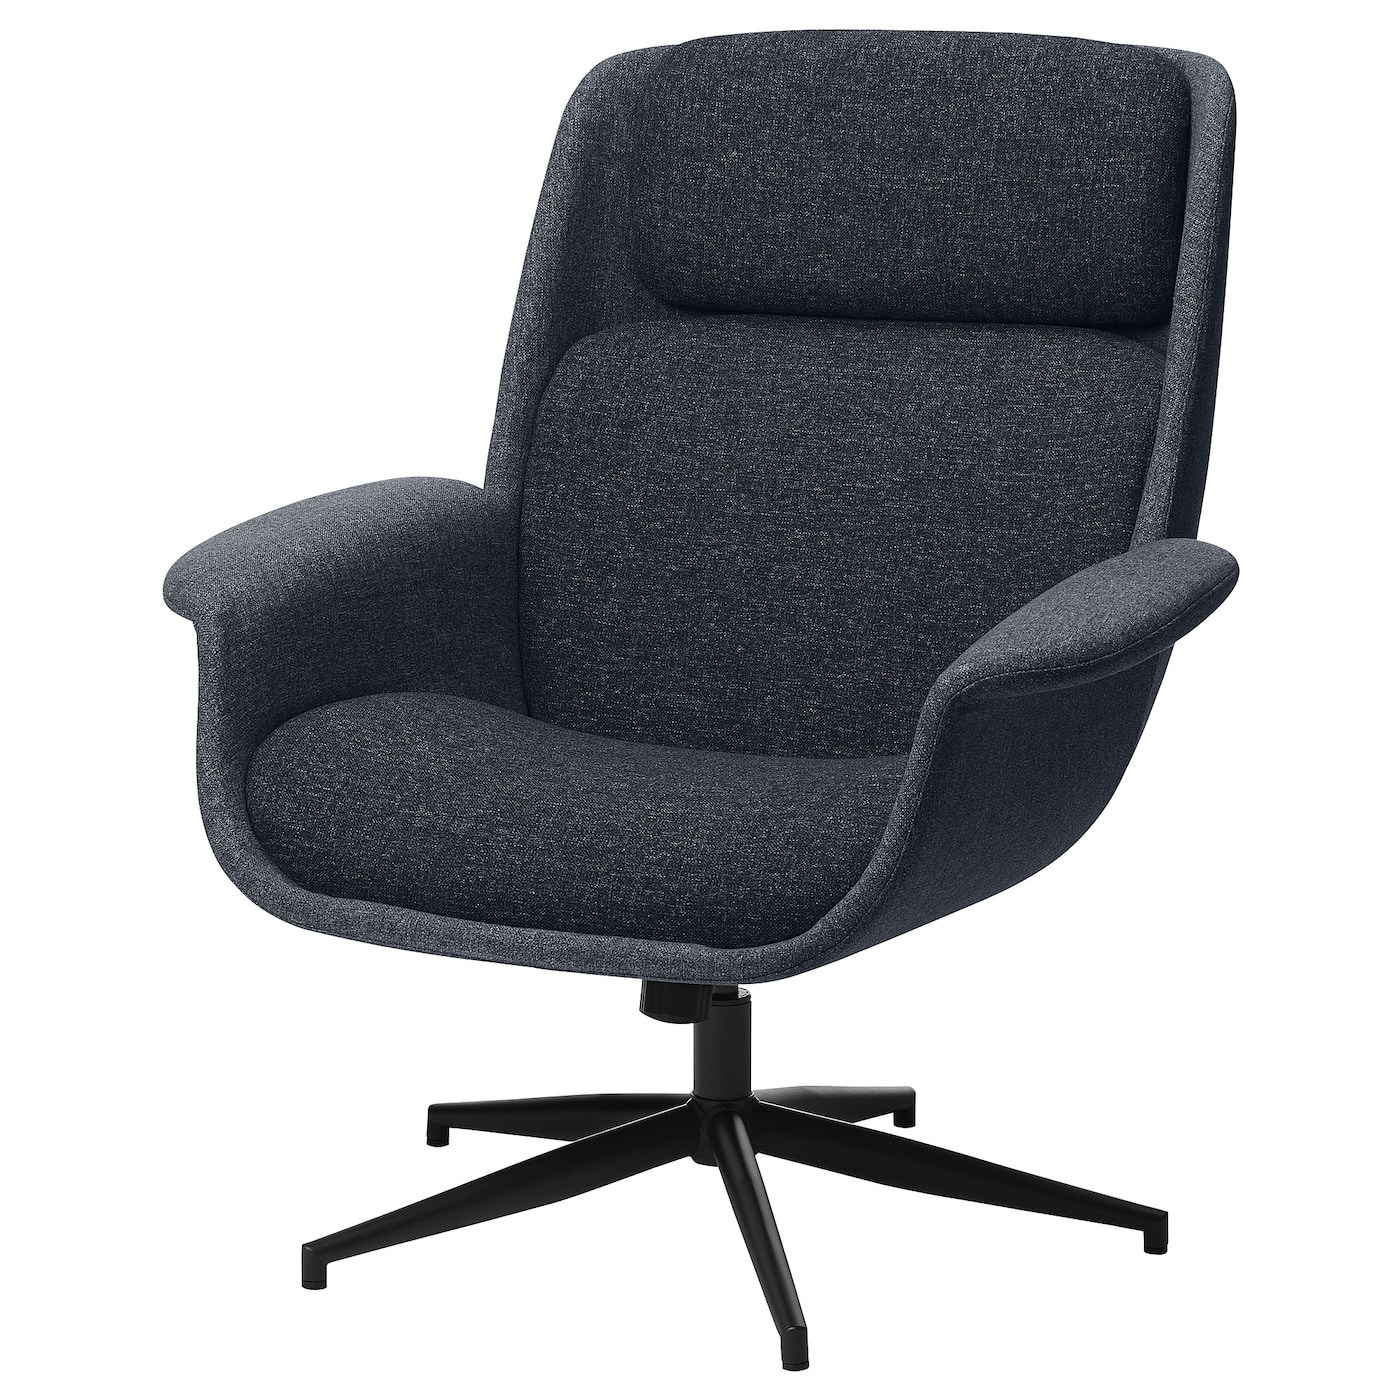 ЭЛЕБИ Вращающееся кресло, Гуннаред средний серый/темно-серый ÄLEBY IKEA офисное кресло с поддержкой спинки поясницы эргономичное кресло для учебы и конференций вращающееся офисное кресло silla офисное игровое к